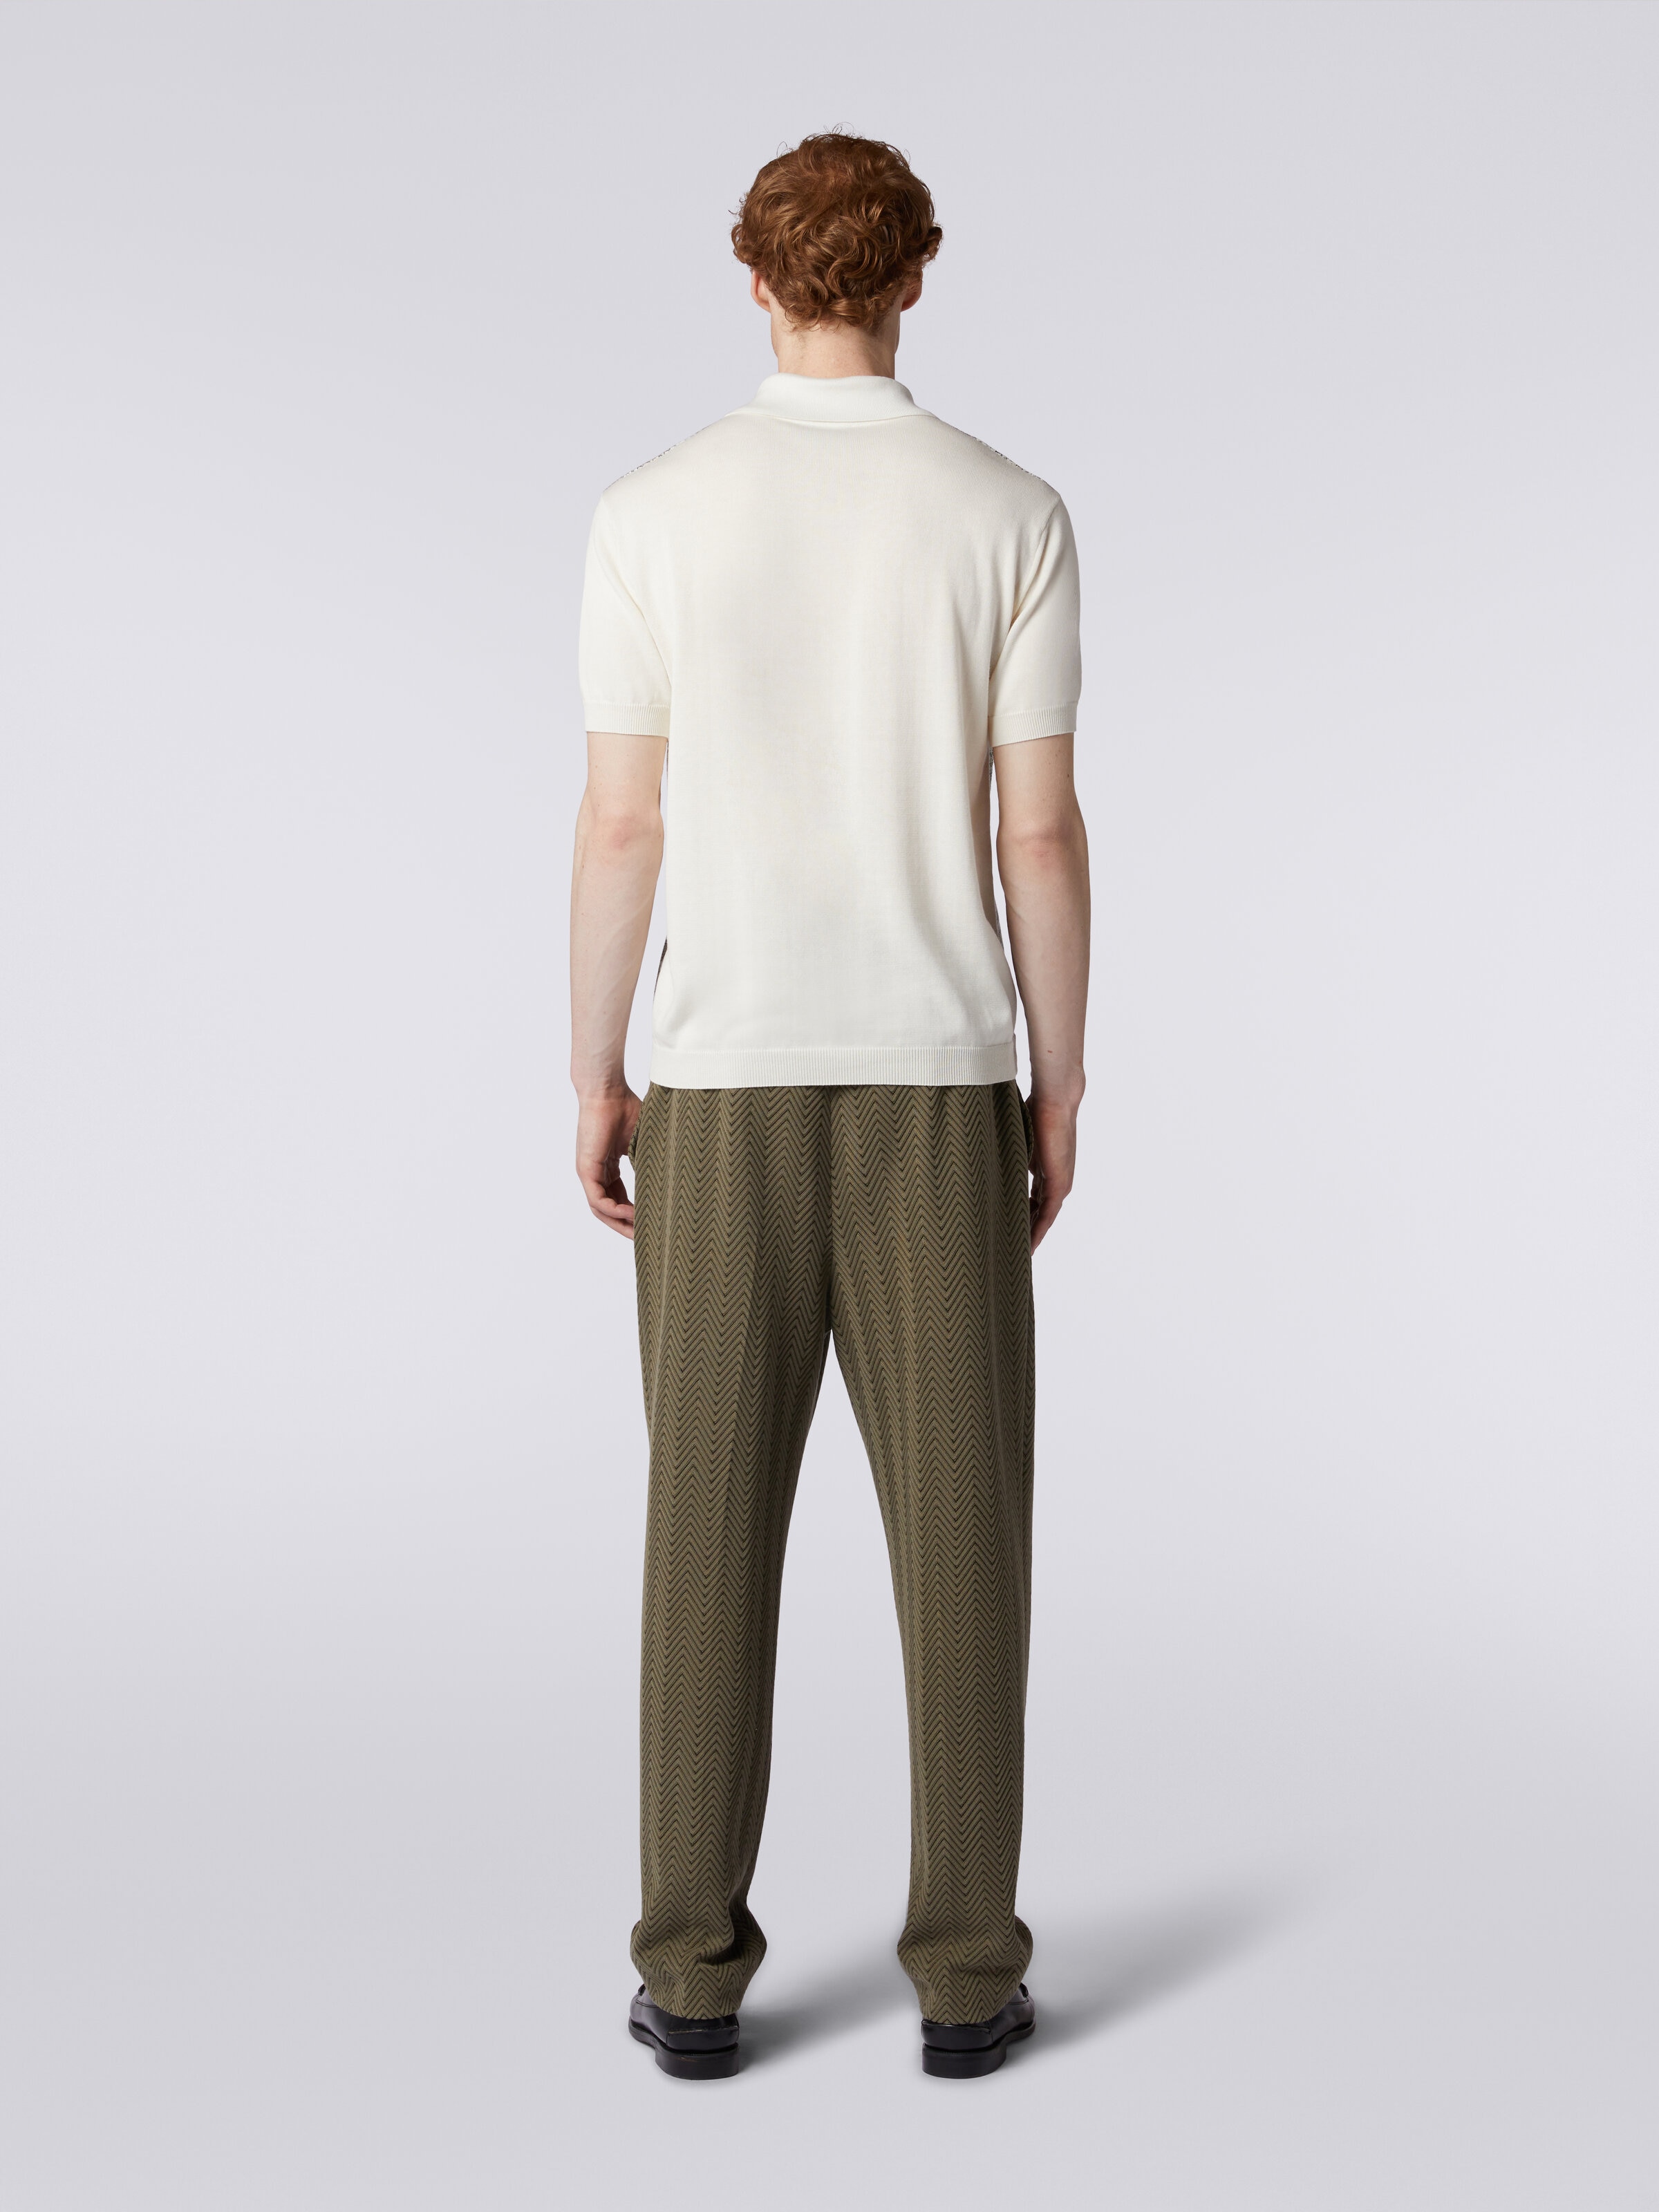 ポロシャツ ショートスリーブ ジグザグ コントラストカラーの縁取り, マルチカラー  - 3